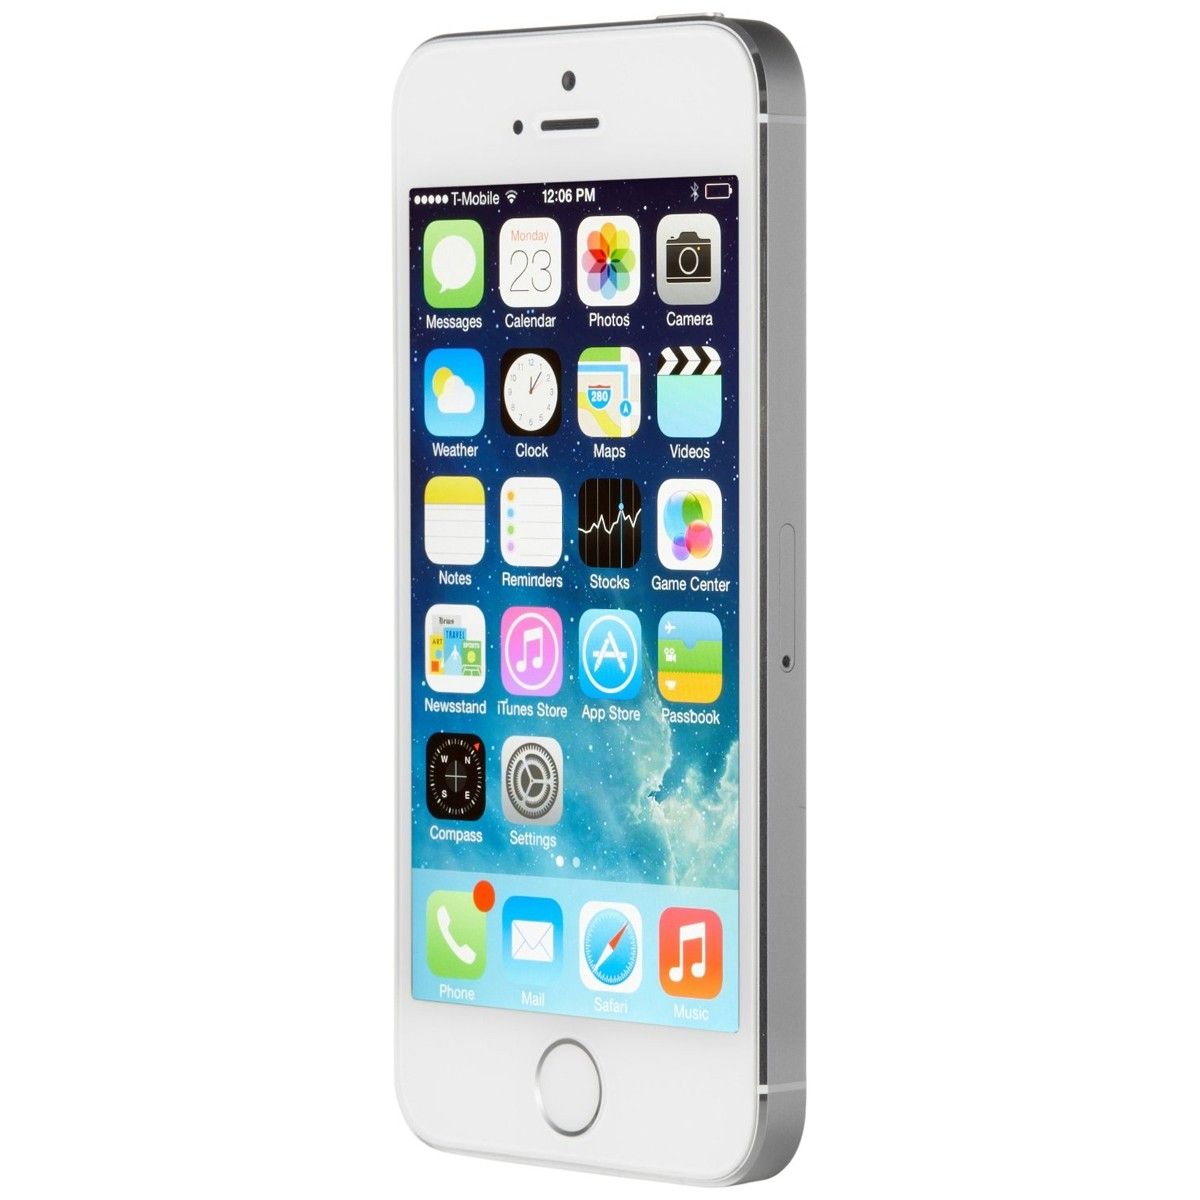 iPhone 5s : Caracteristicas y especificaciones